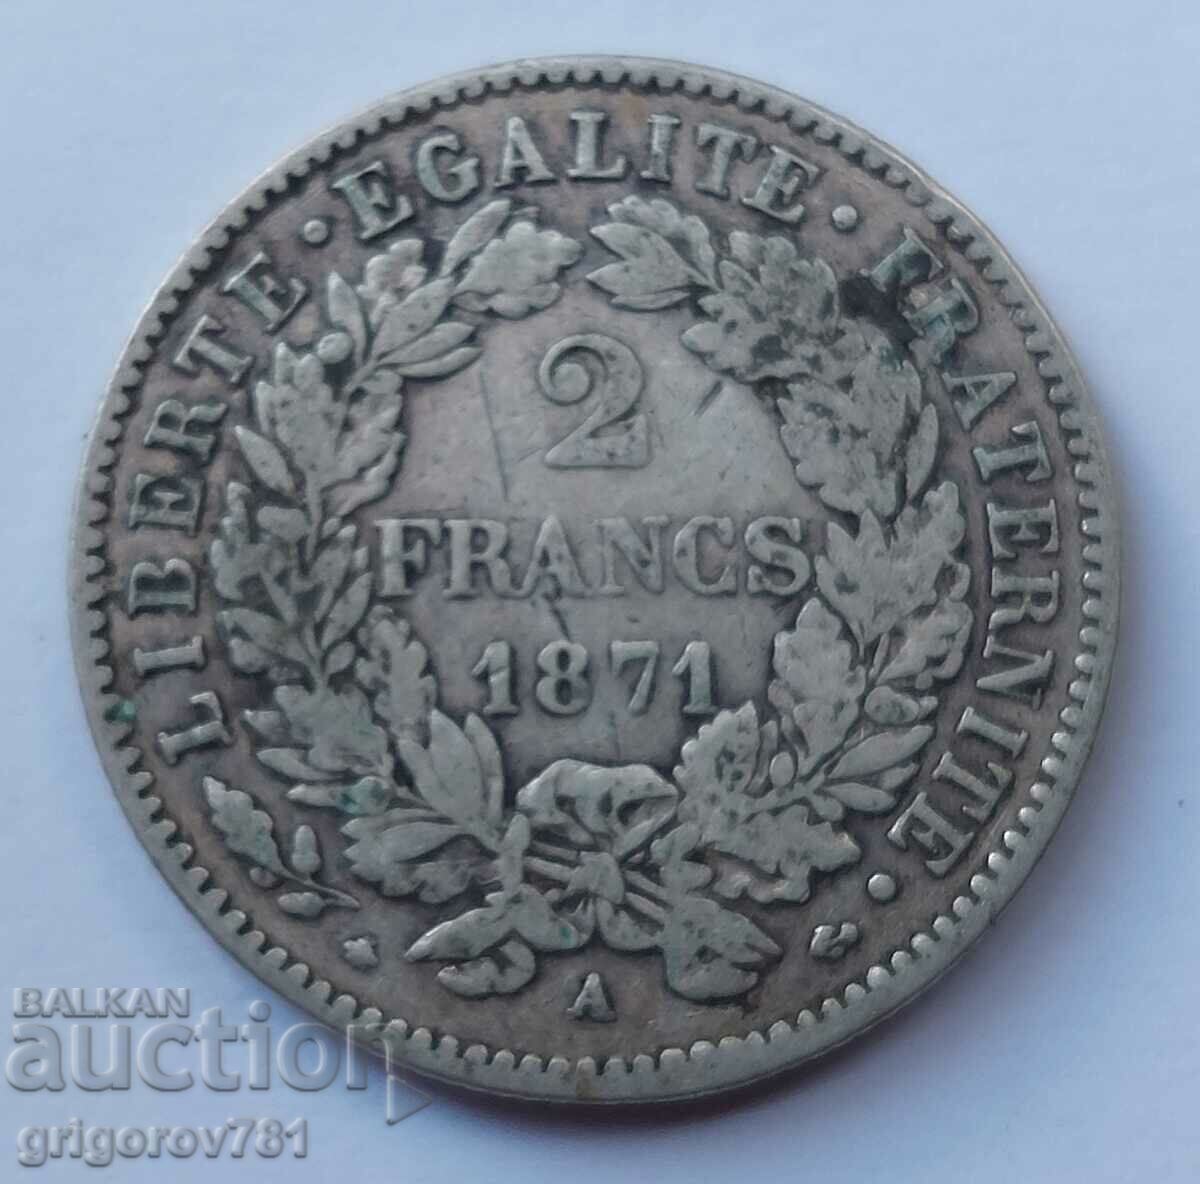 Ασημένιο 2 φράγκα Γαλλία 1871 Α - ασημένιο νόμισμα №32